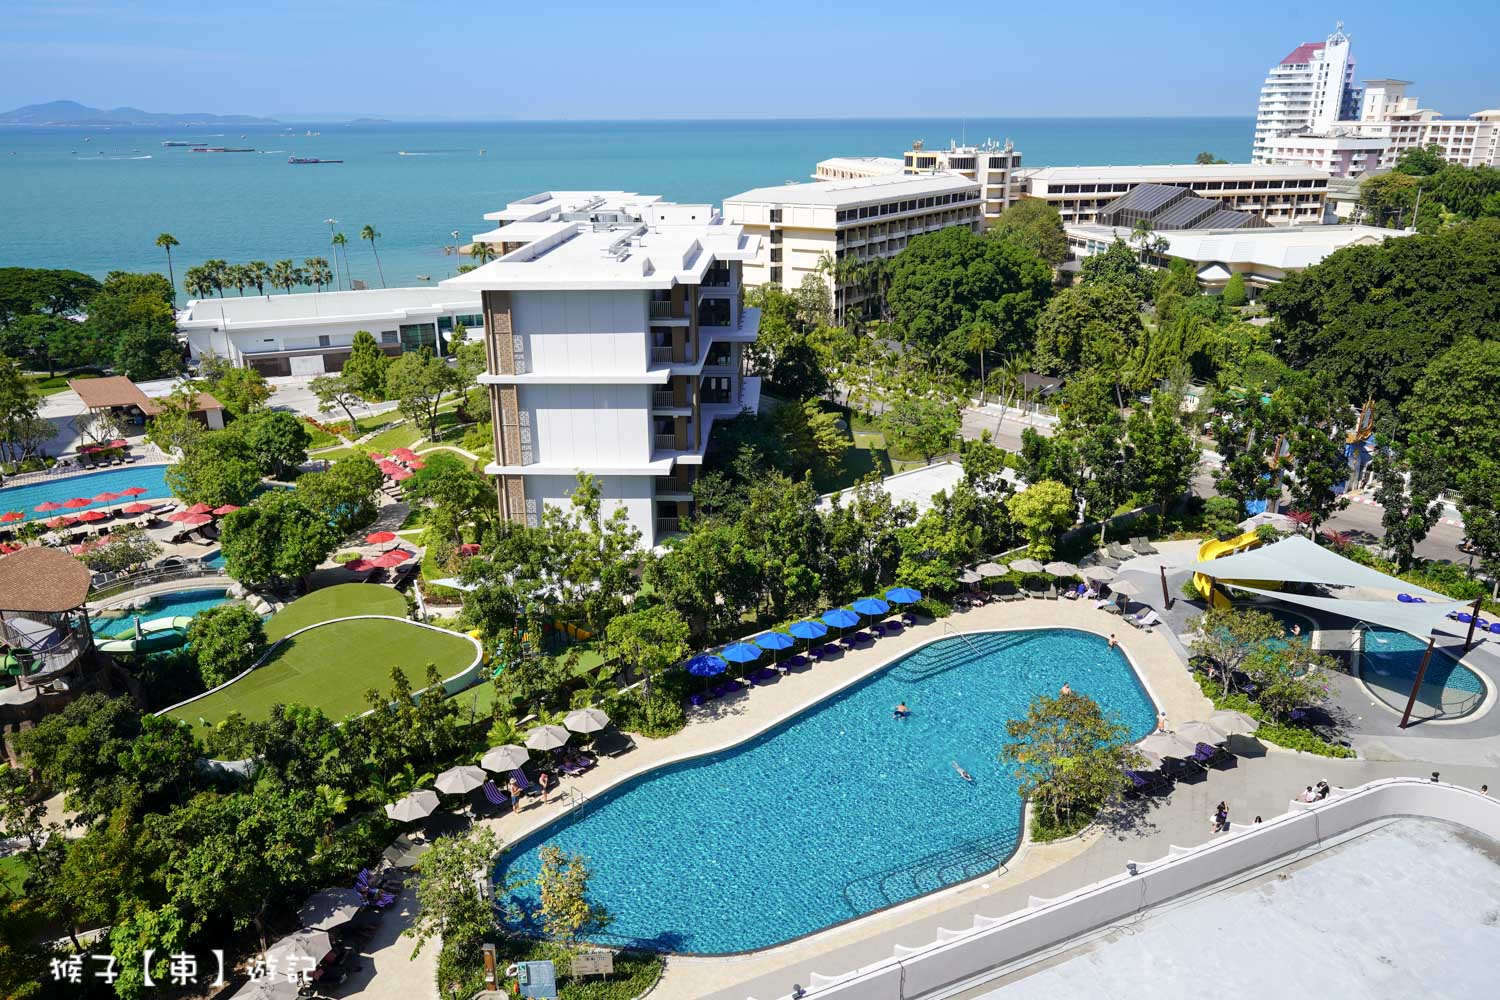 延伸閱讀：[泰國] 芭達雅飯店 OZO North Pattaya 超療癒海景房 滑水道 游泳池超chill 近海灘 Terminal 21 雙條車超方便